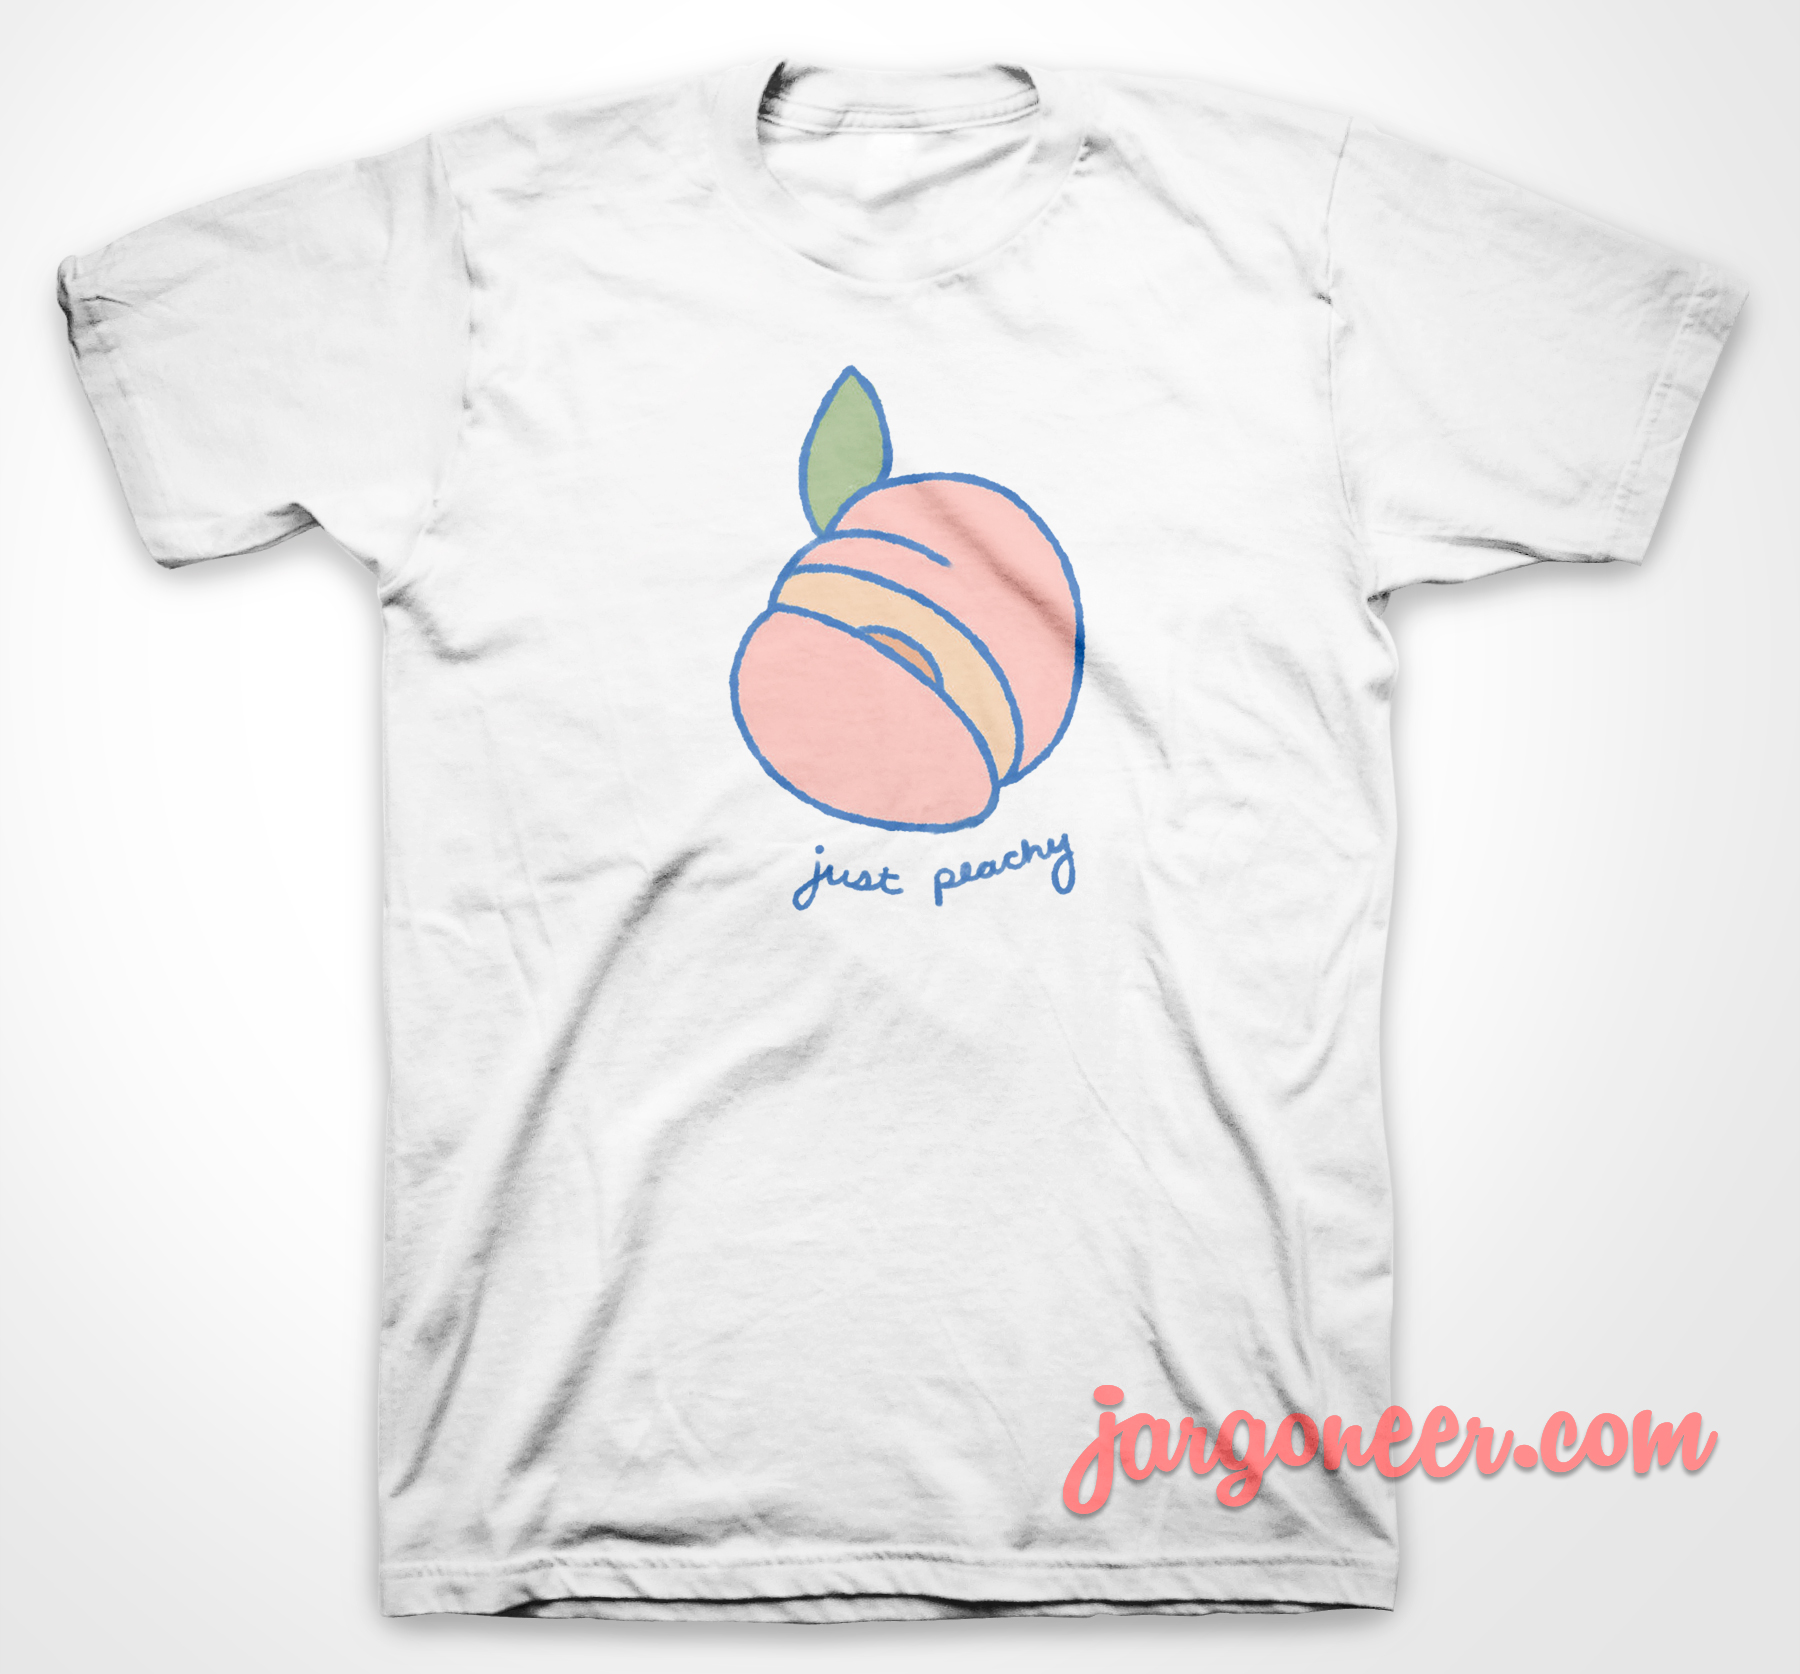 Just Peachy - Shop Unique Graphic Cool Shirt Designs